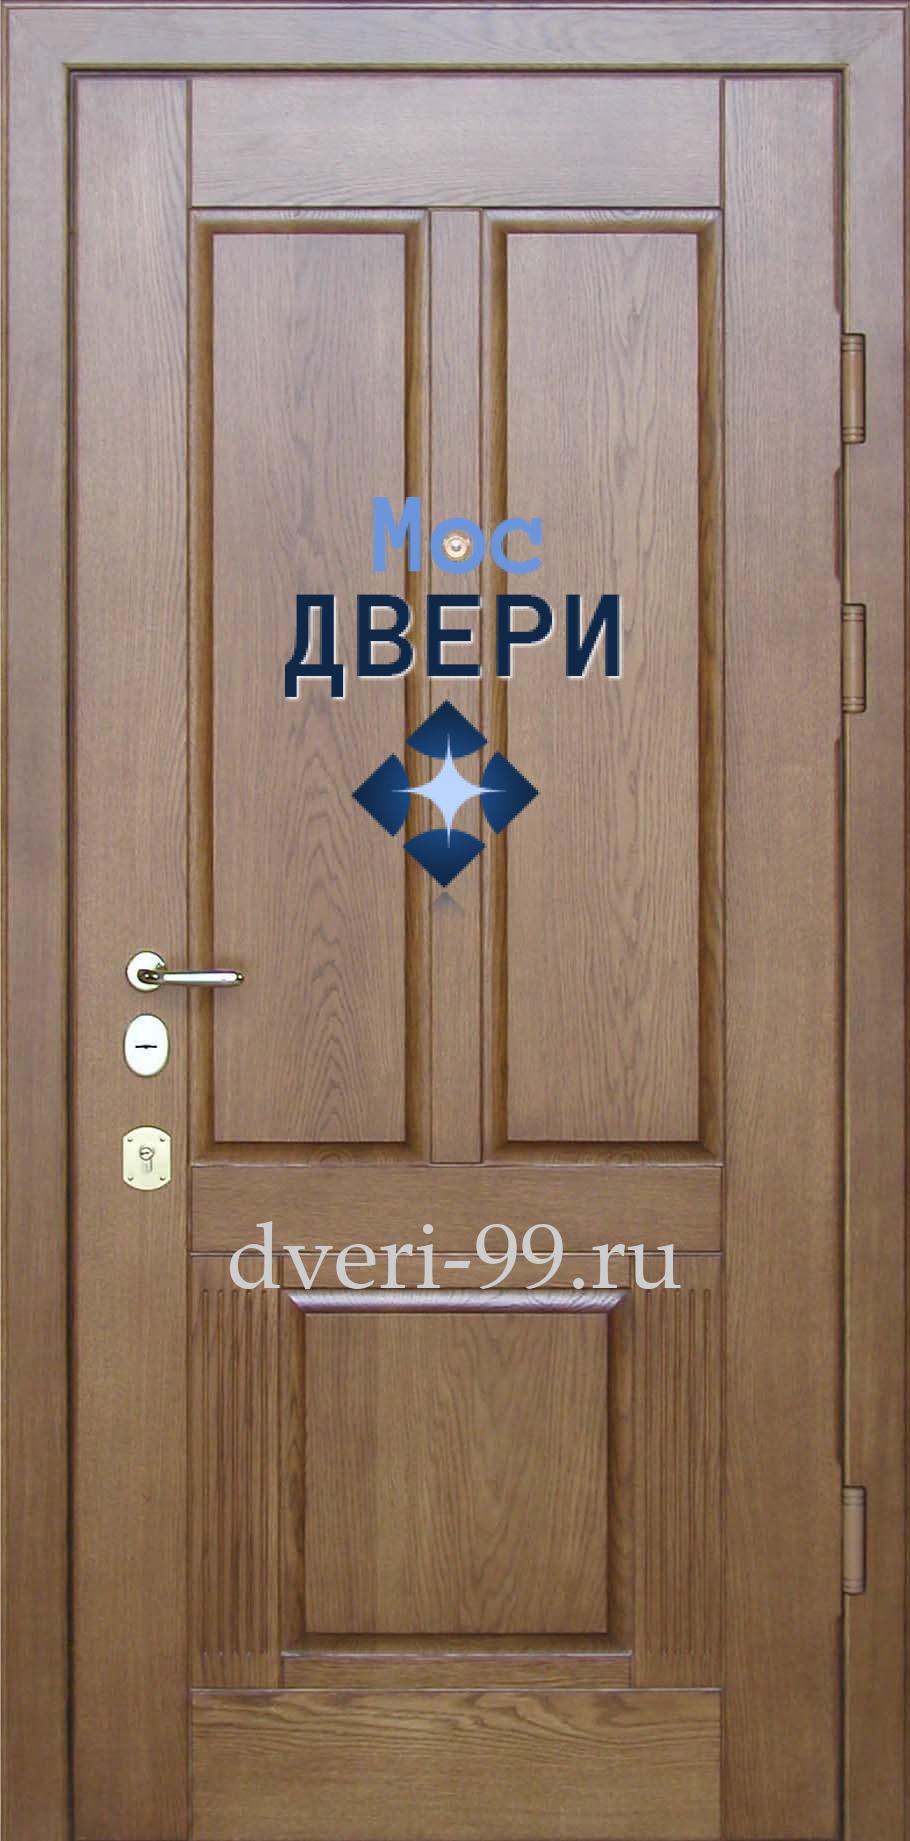 Входная дверь №14 МДФ ПВХ 16мм. + МДФ ПВХ 16мм.